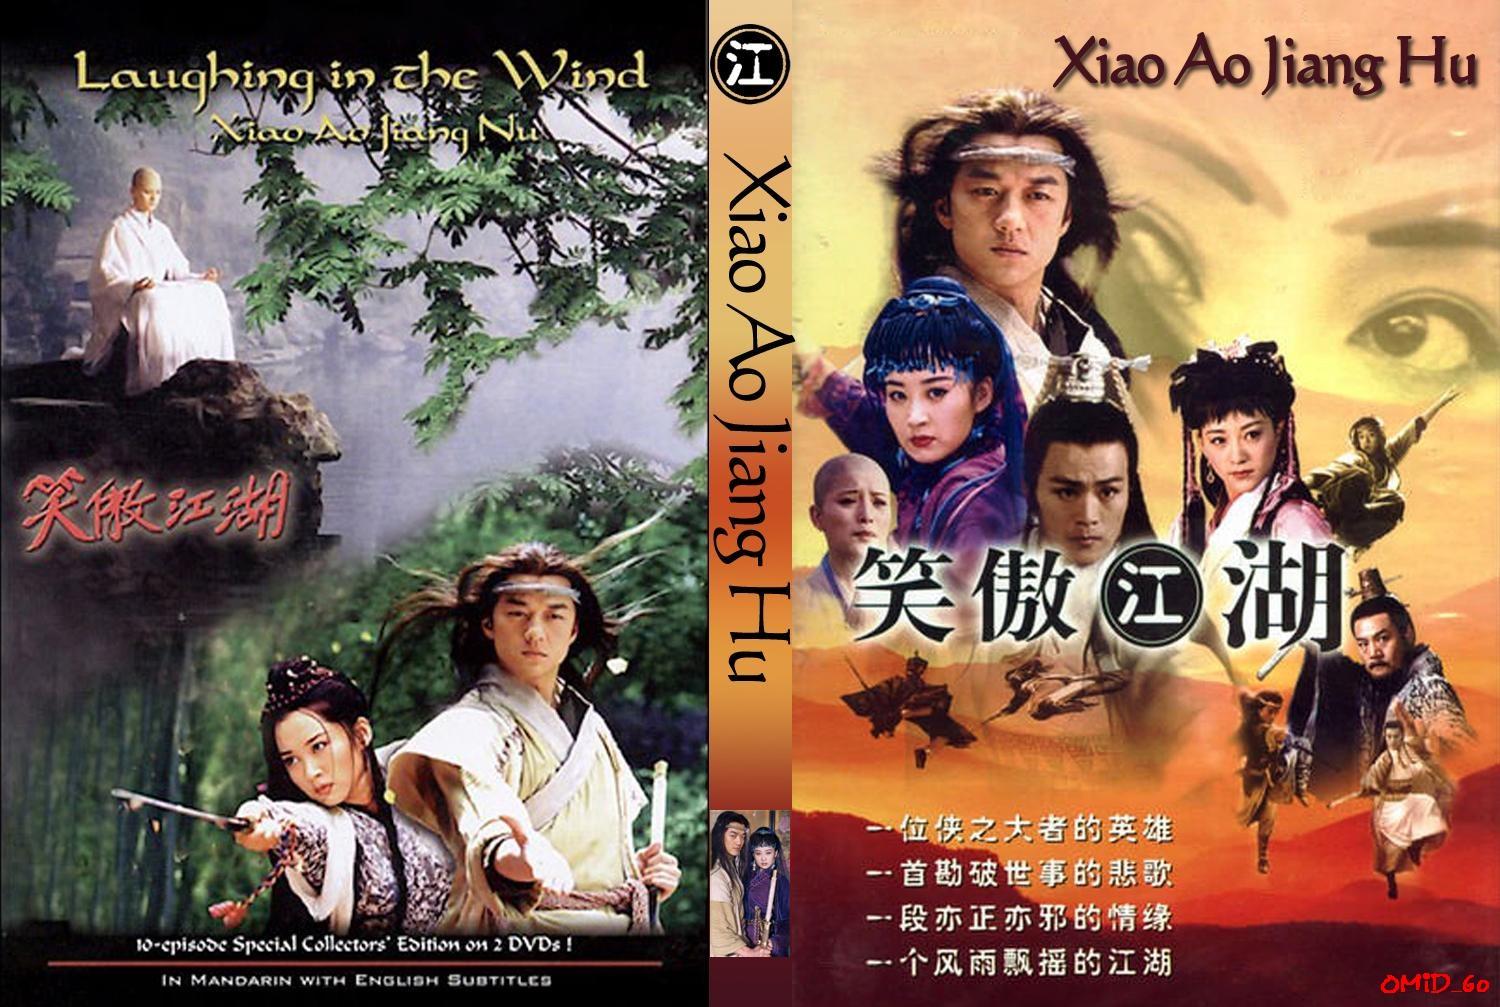 Xiao ao jiang hu movie